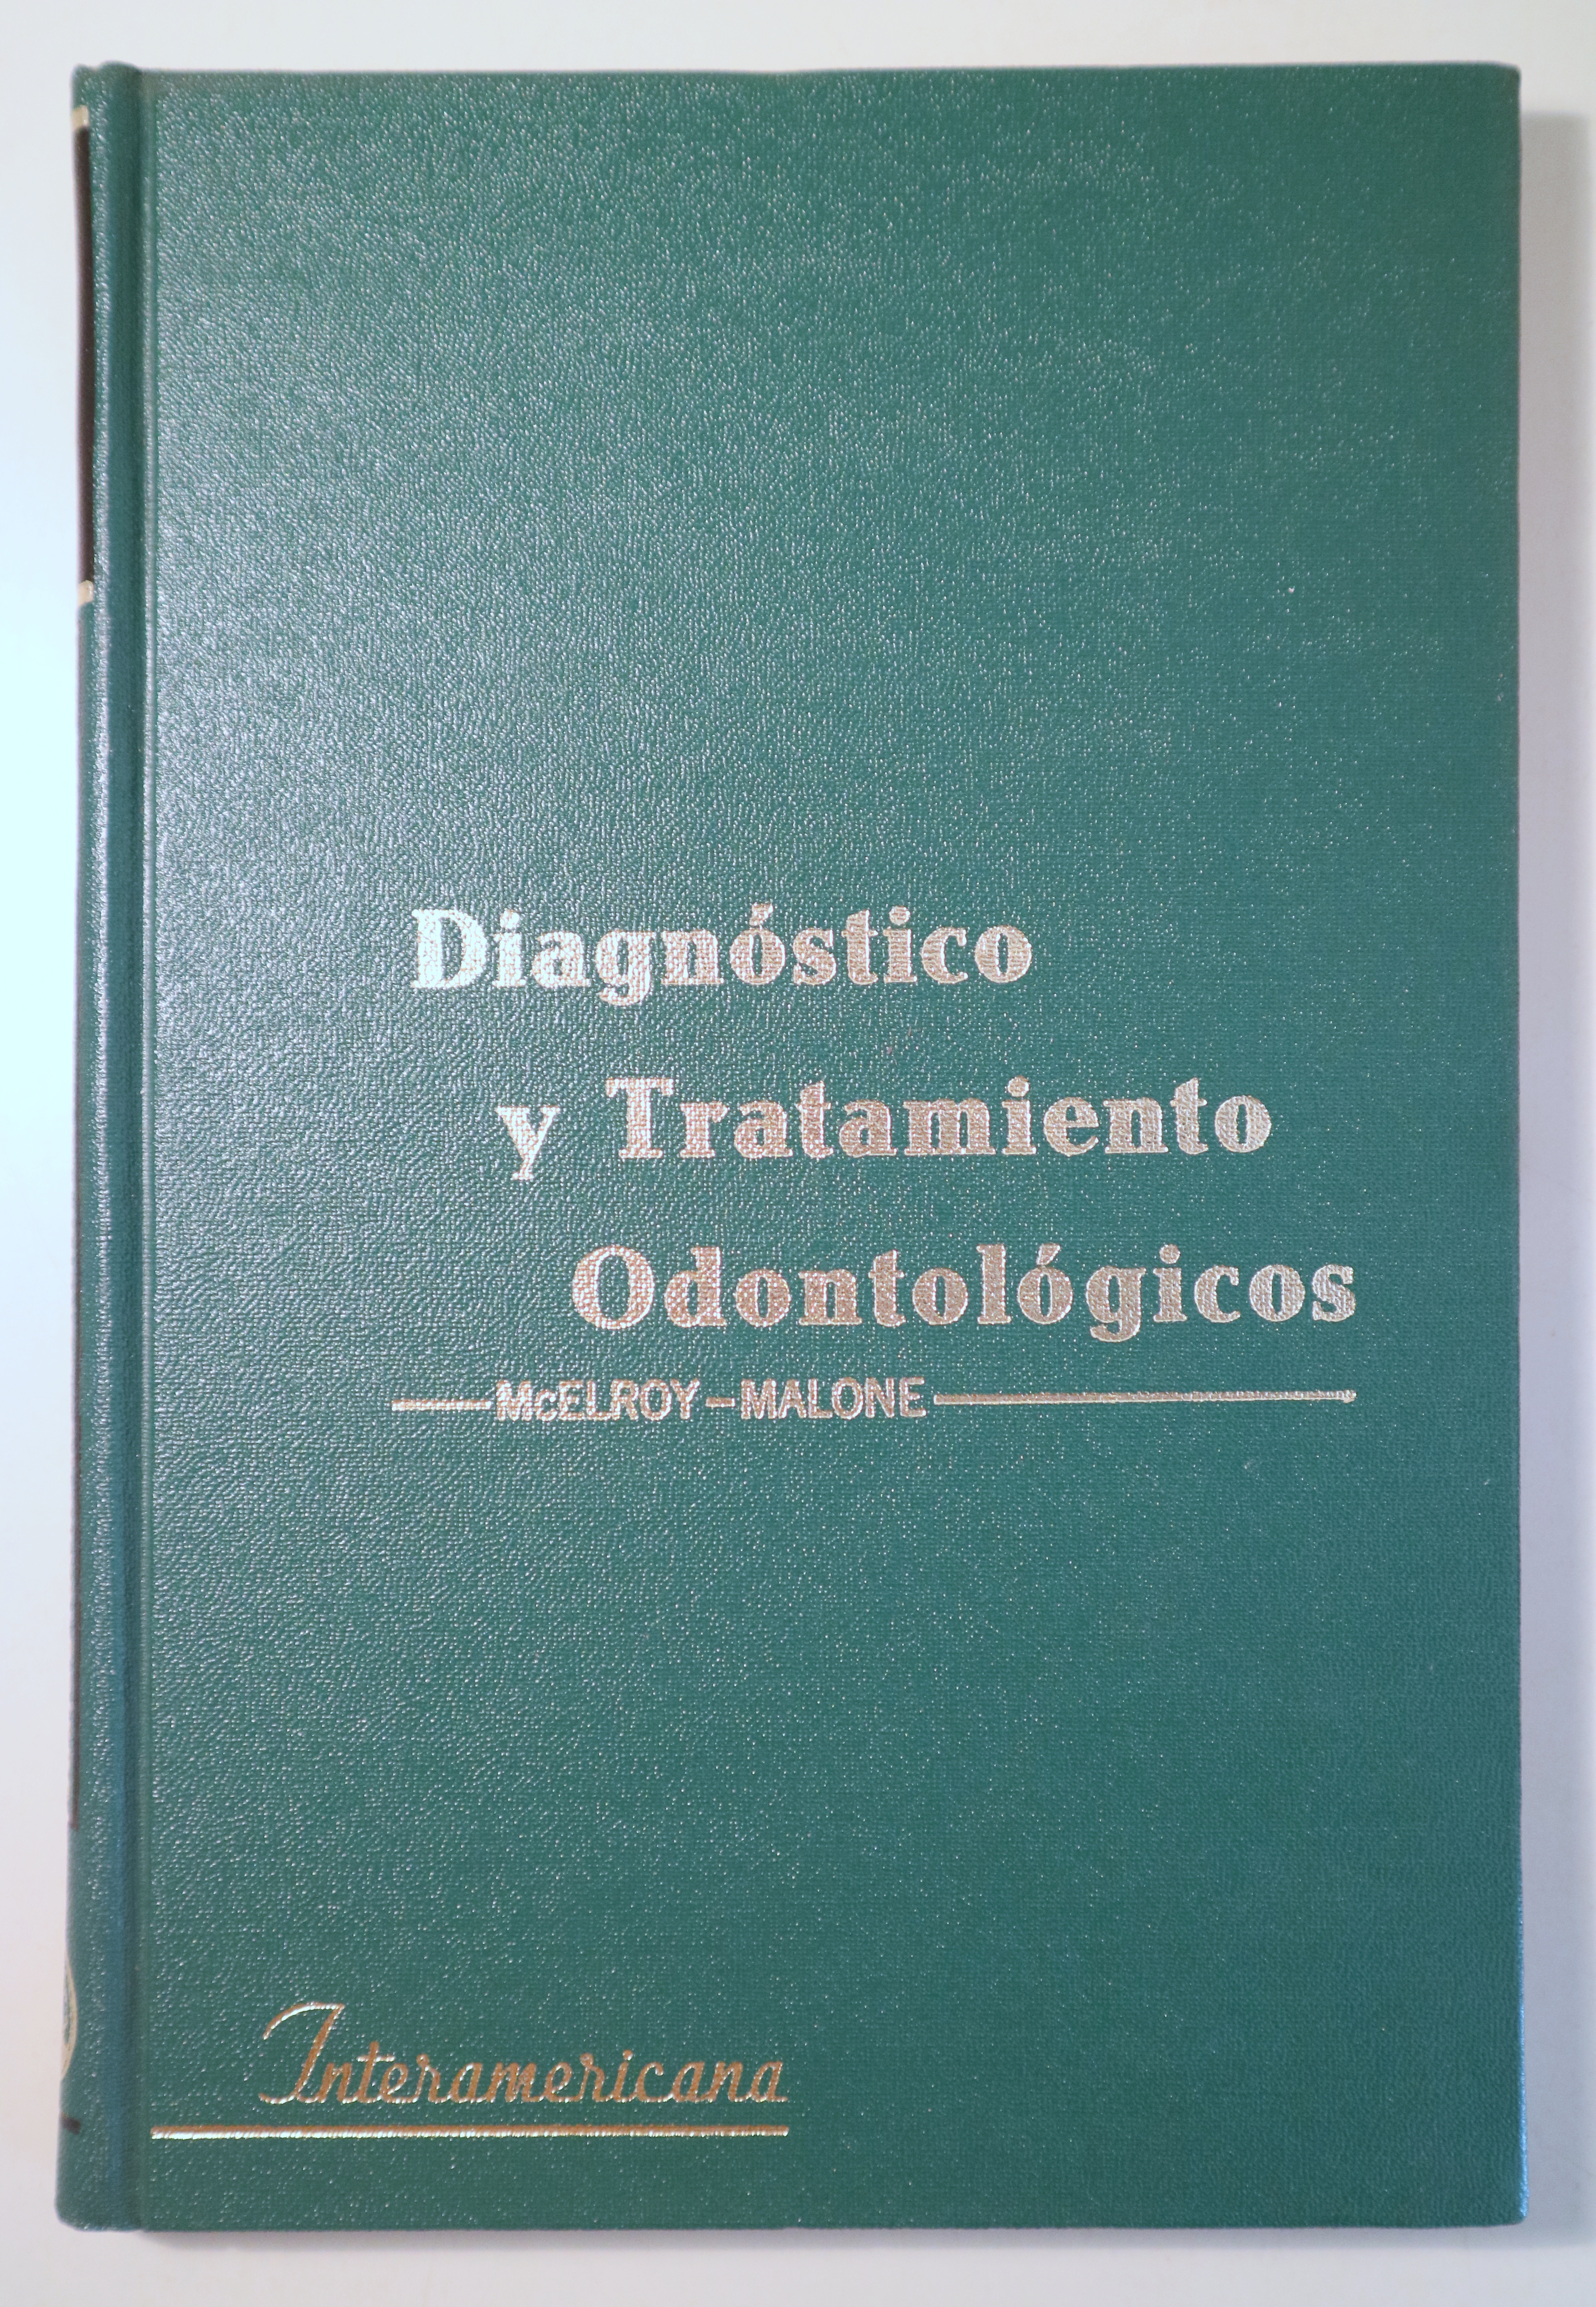 DIAGNÓSTICO Y TRATAMIENTO ODONTOLÓGICOS - México 1971 - Ilustrado